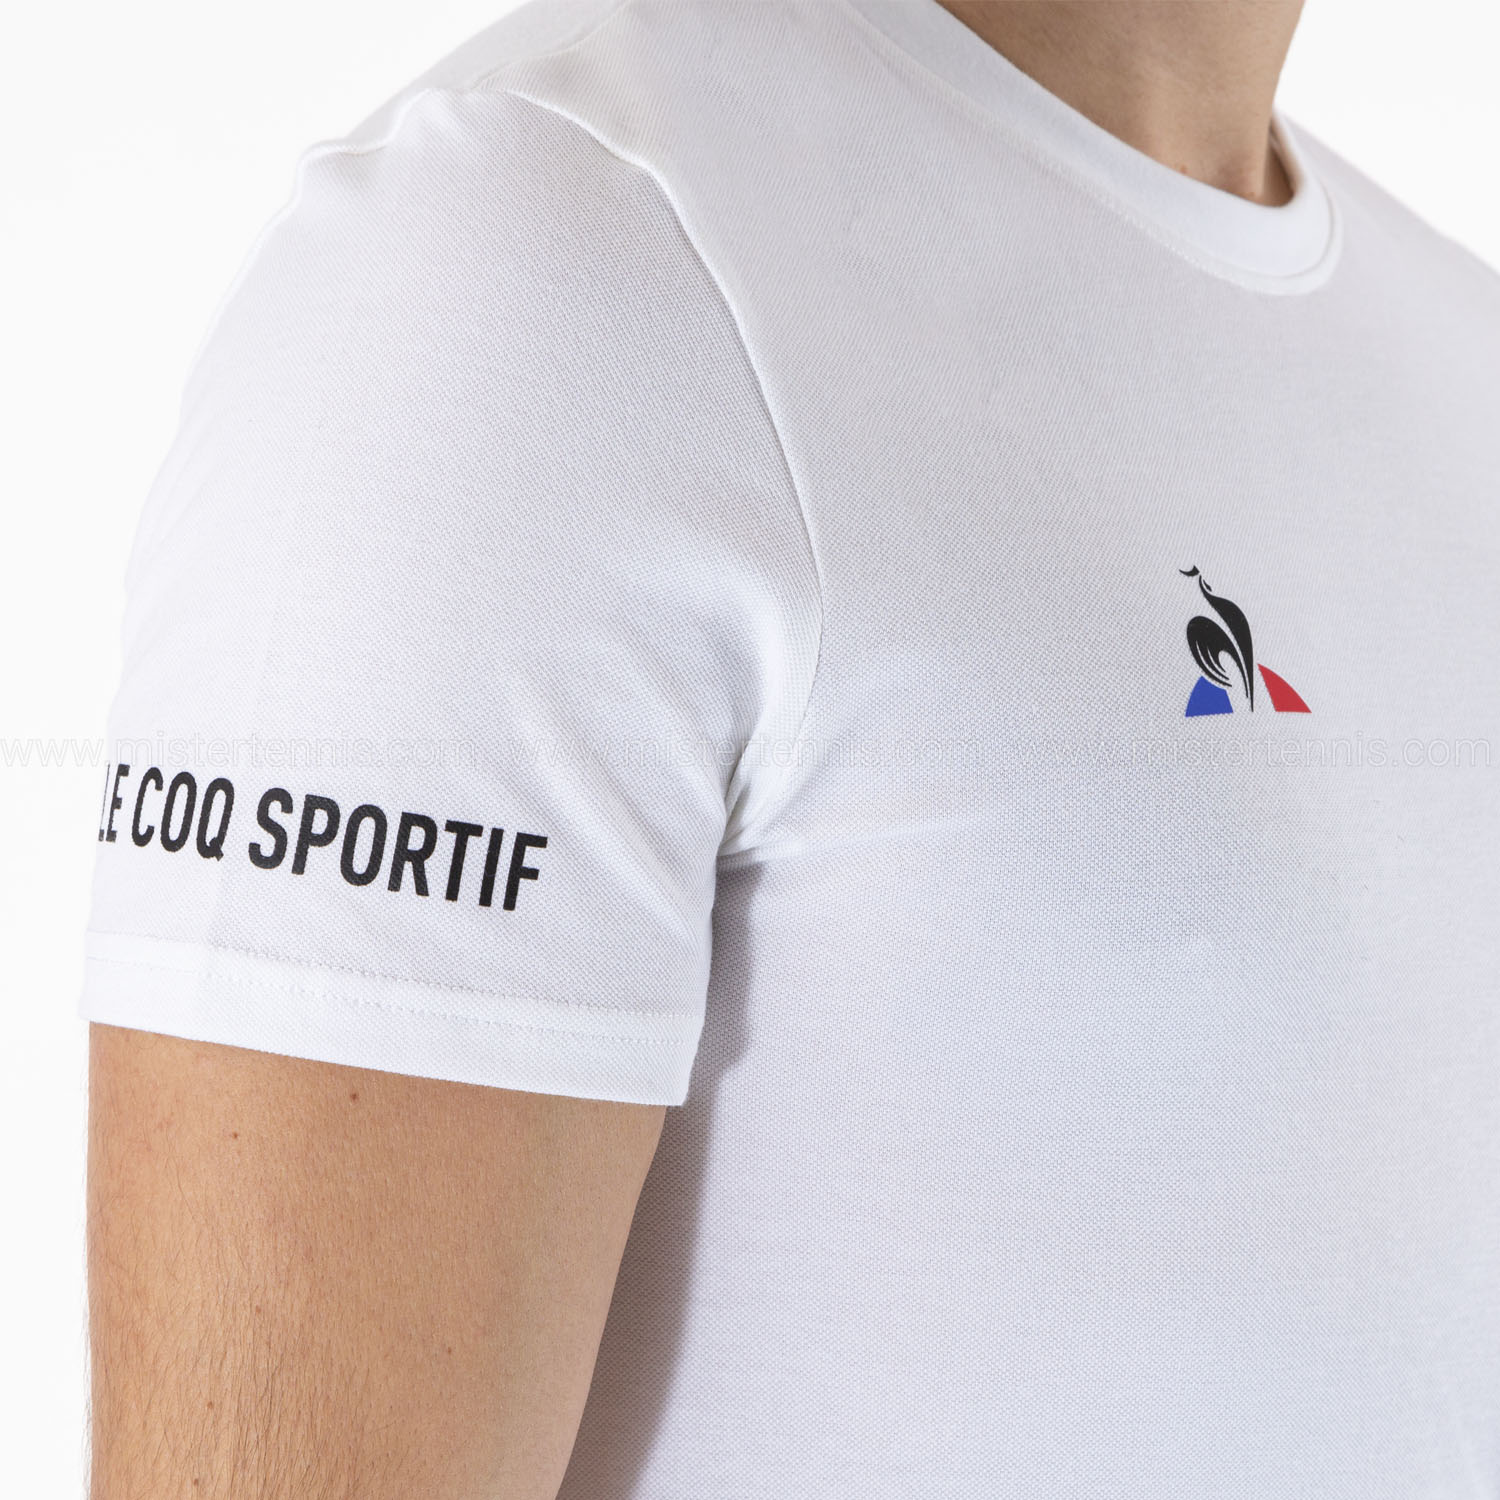 Le Coq Sportif Logo T-Shirt - New Optical White